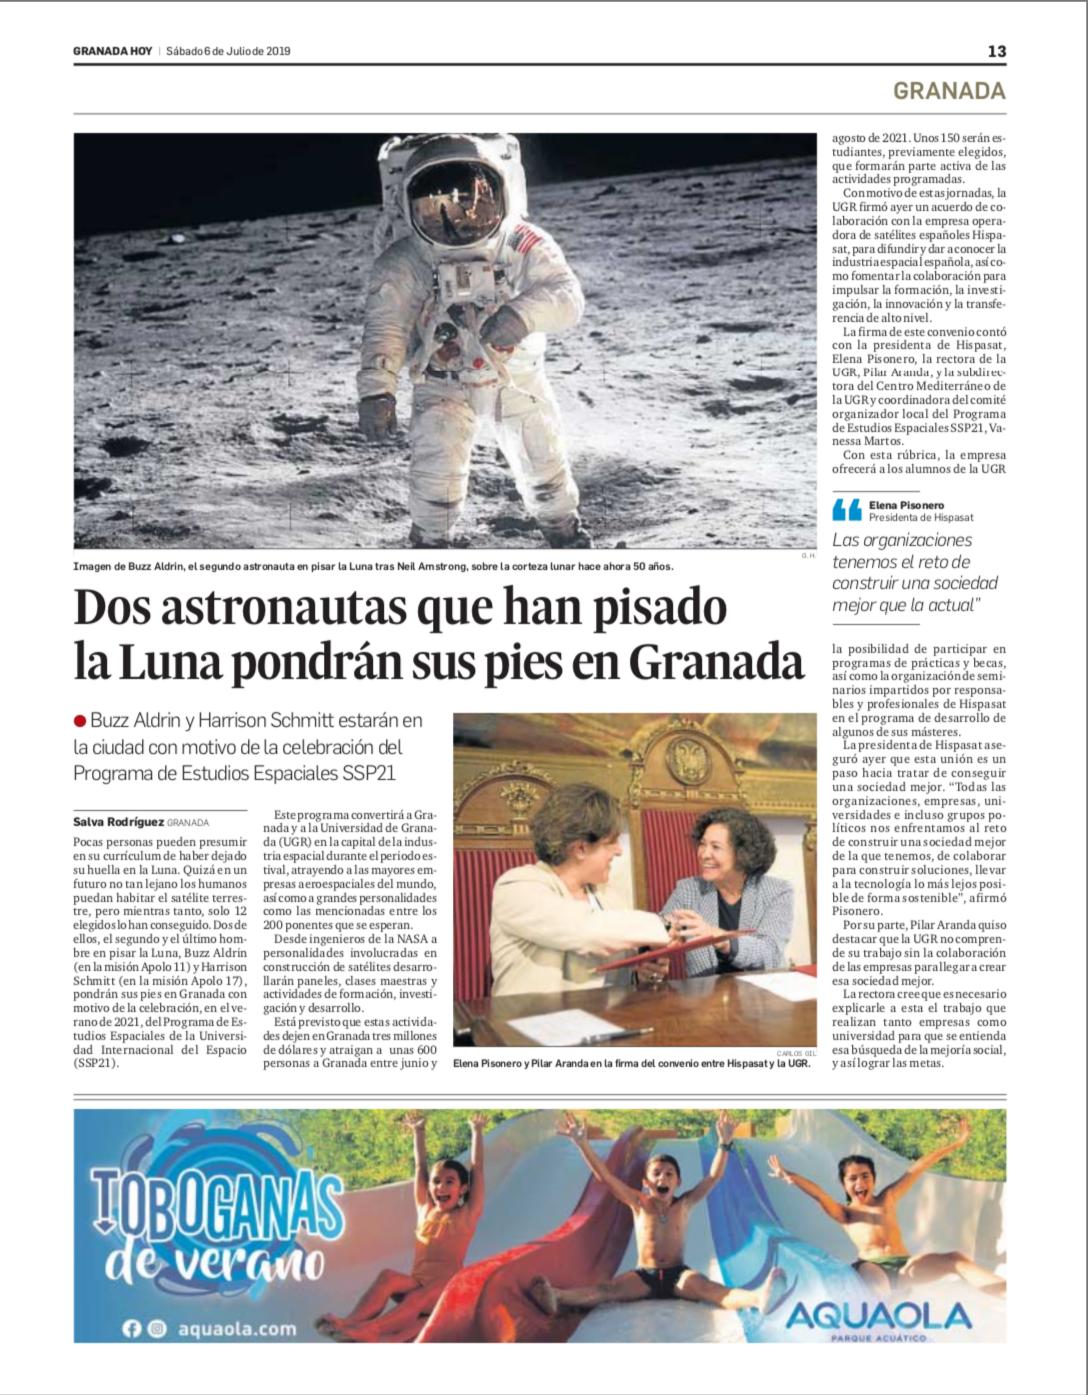 Dos astronautas que han pisado la luna pondrán sus pies en Granada (Granada Hoy)